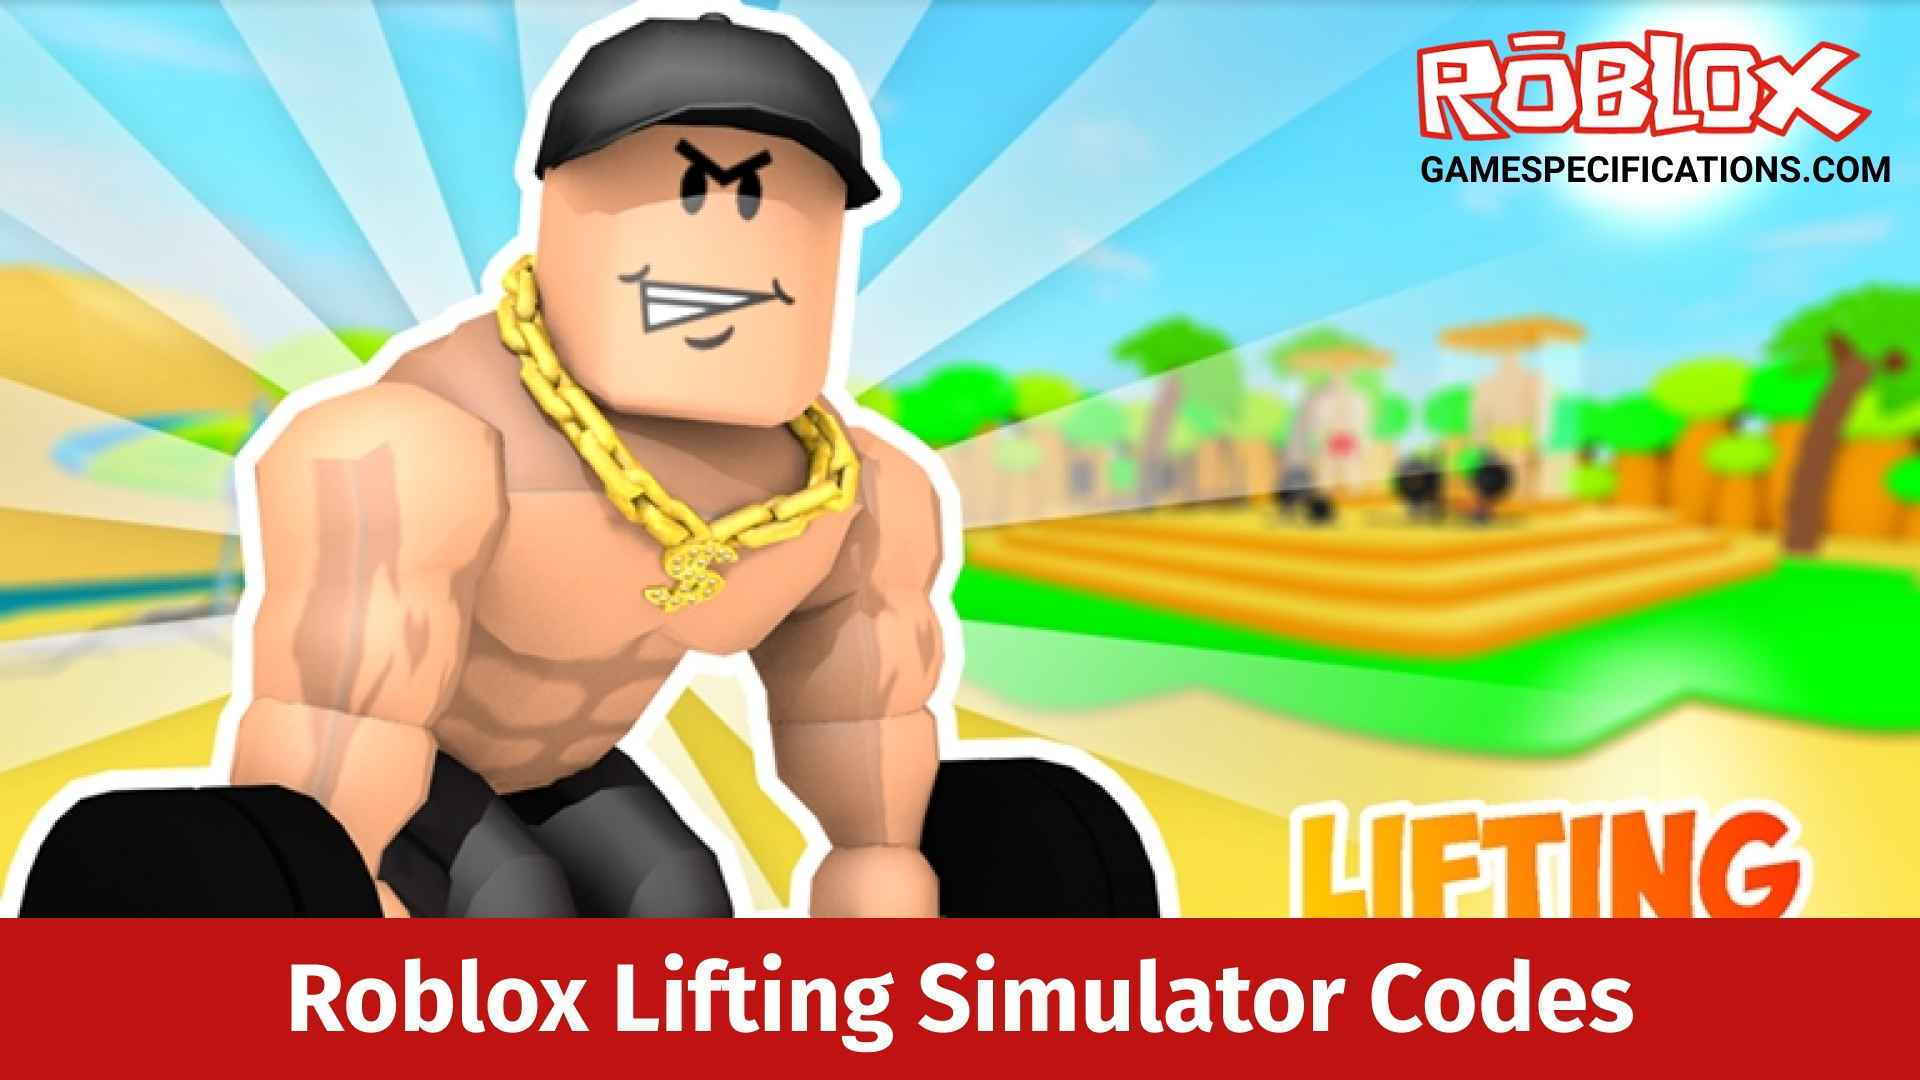 Roblox Lifting Simulator Codes July 2021 Game Specifications - roblox pet trainer simulator codes